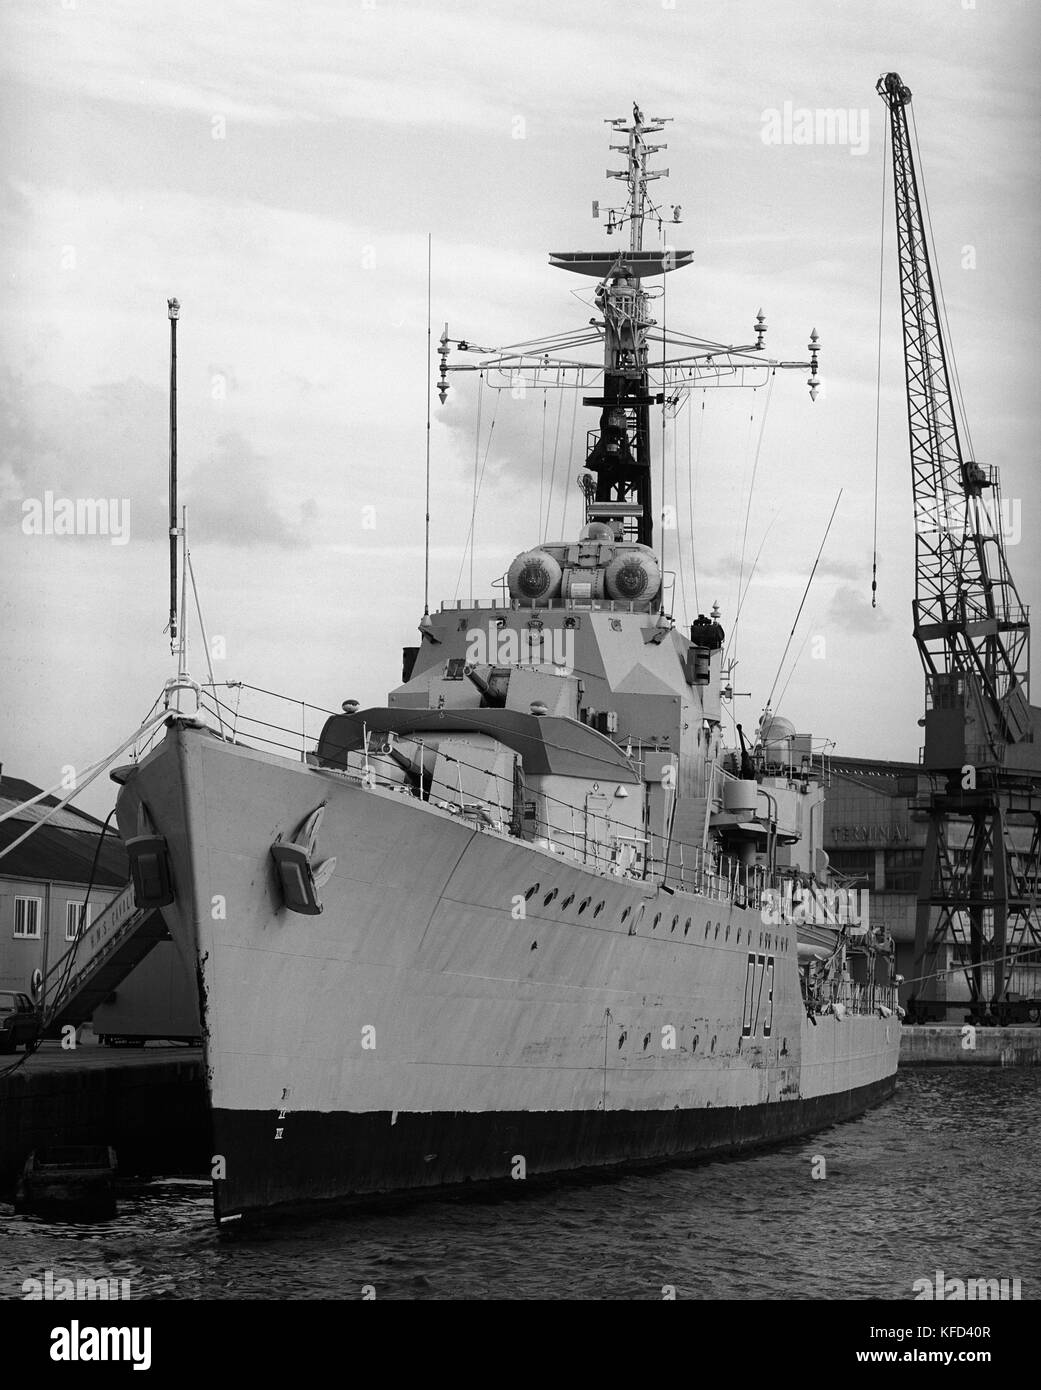 D73 HMS Cavalier world war 2 British Royal Navy Destroyer de classe C en stationnement dans les docks de Southampton, Southampton, Hampshire, England, UK - photographie prise d'août 1982 Banque D'Images